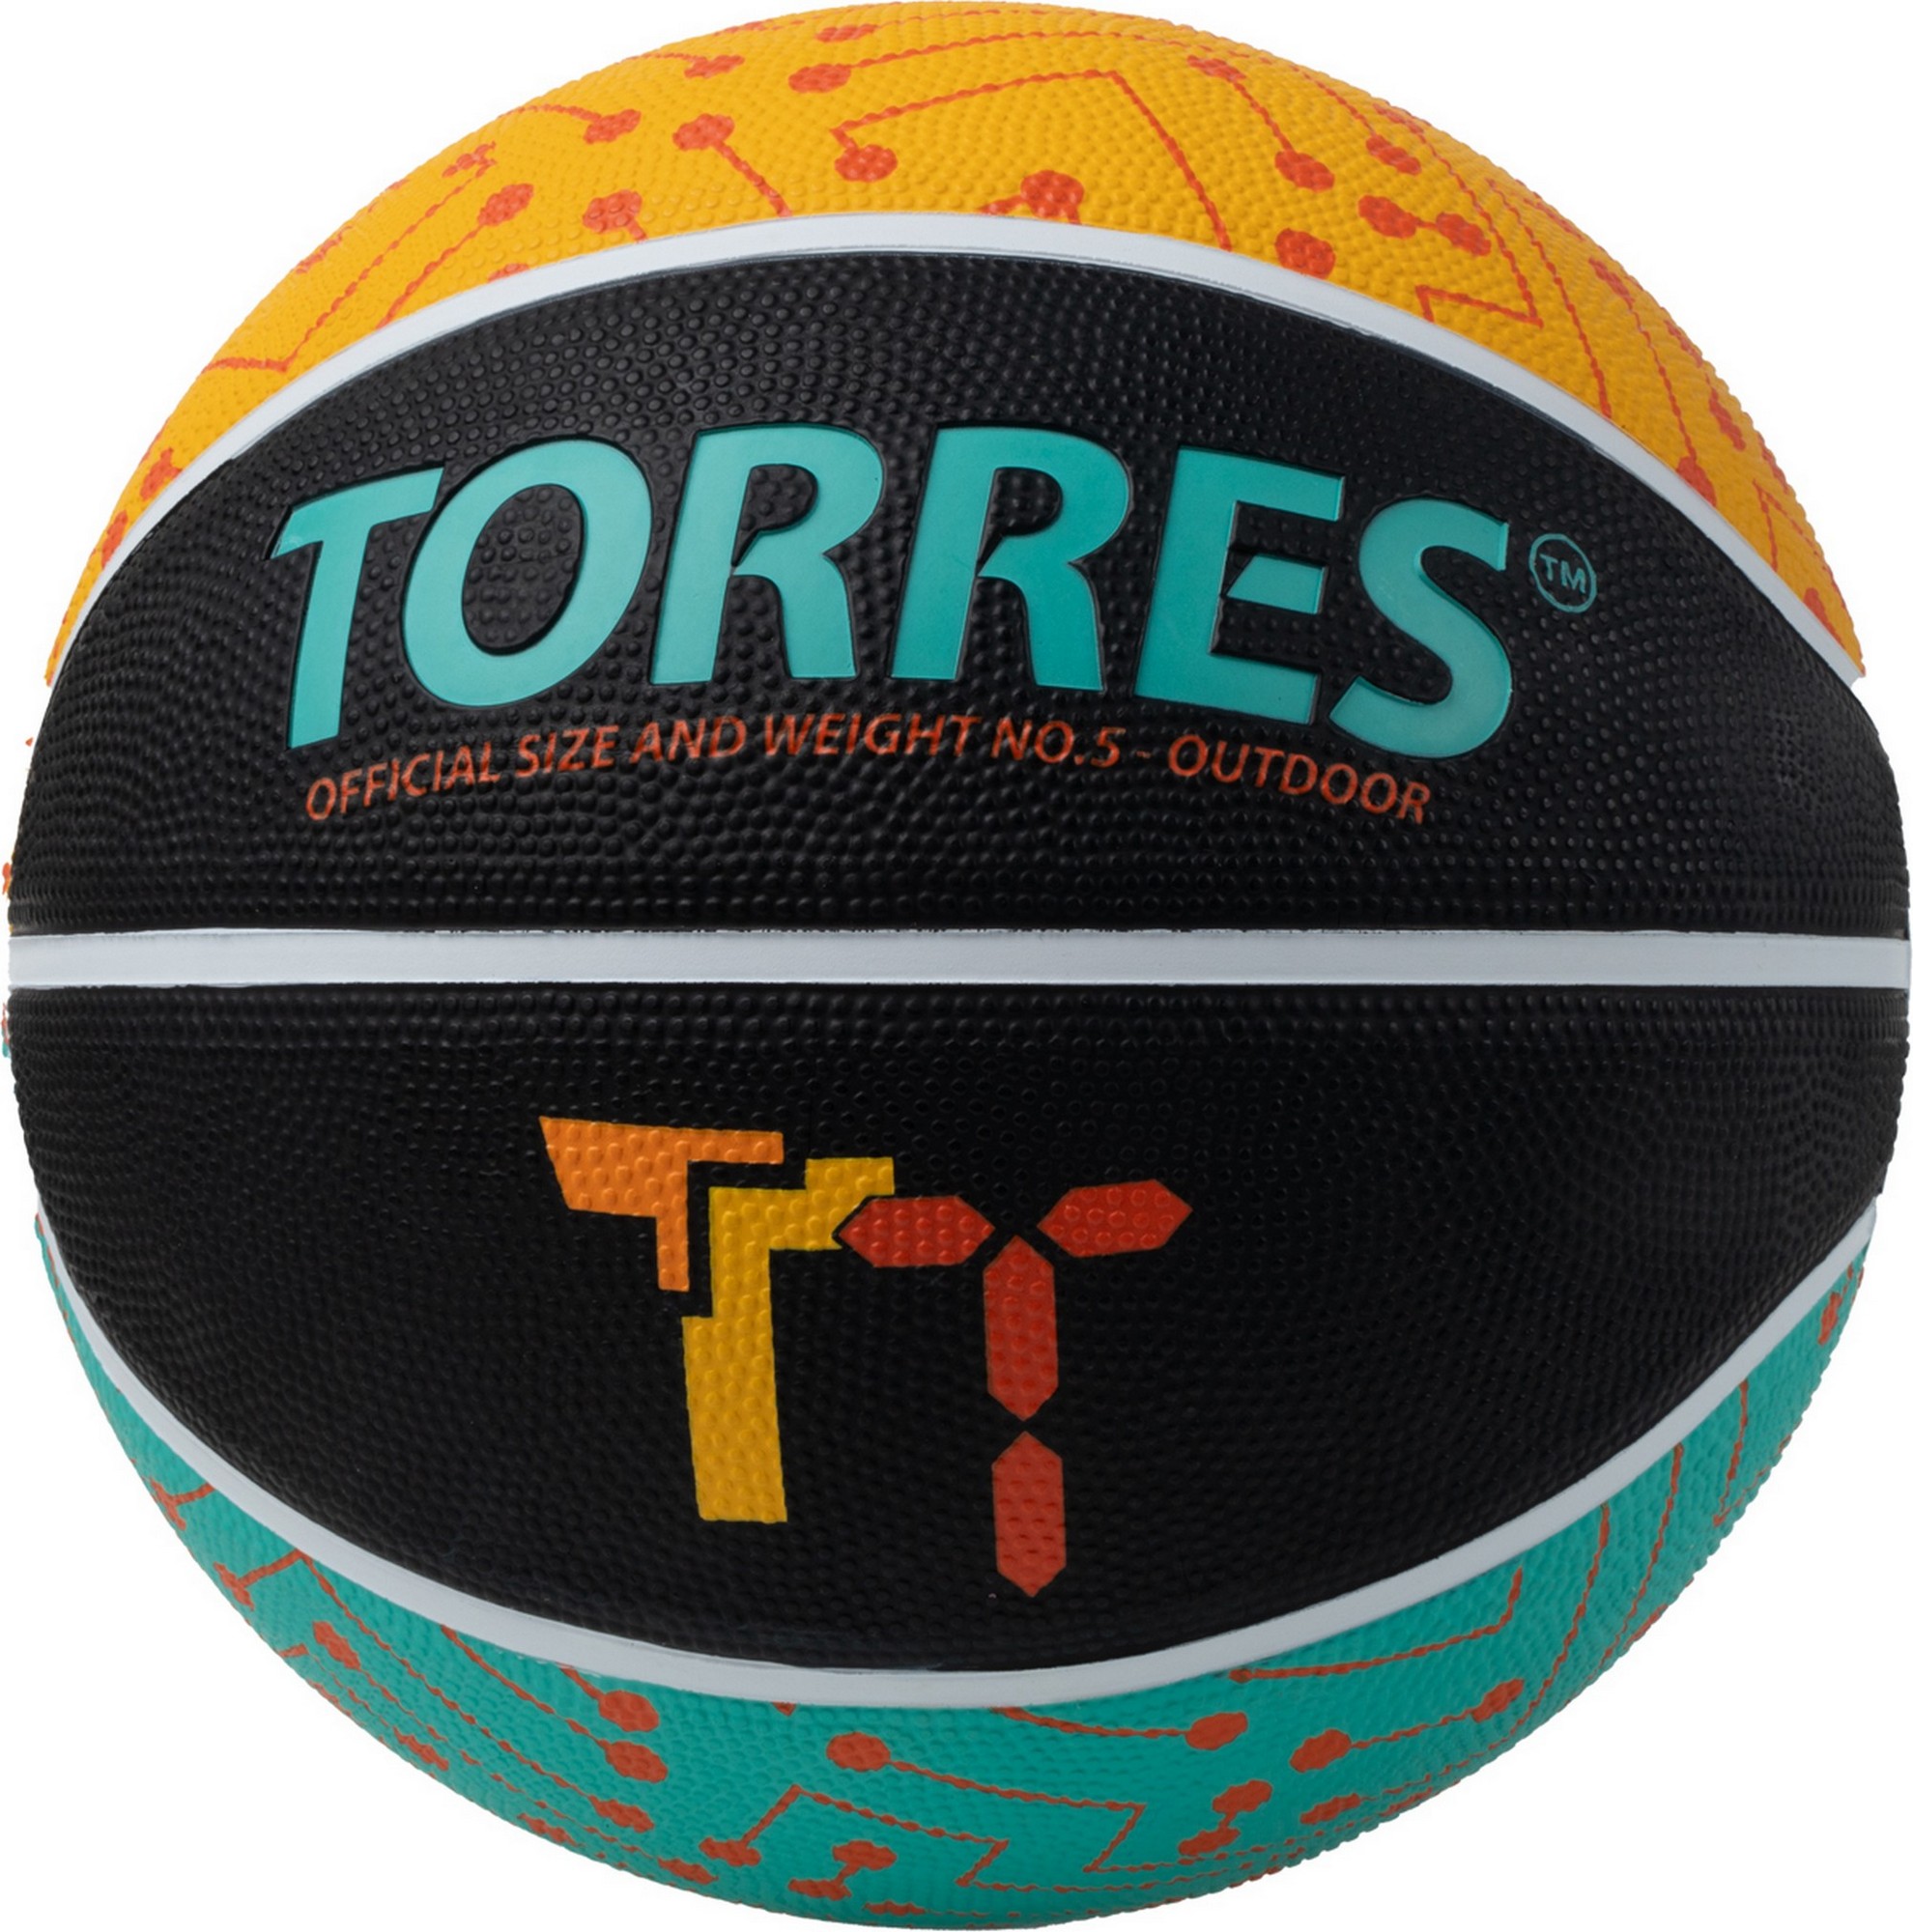 Мяч баскетбольный Torres TT B023155 р.5 1980_2000